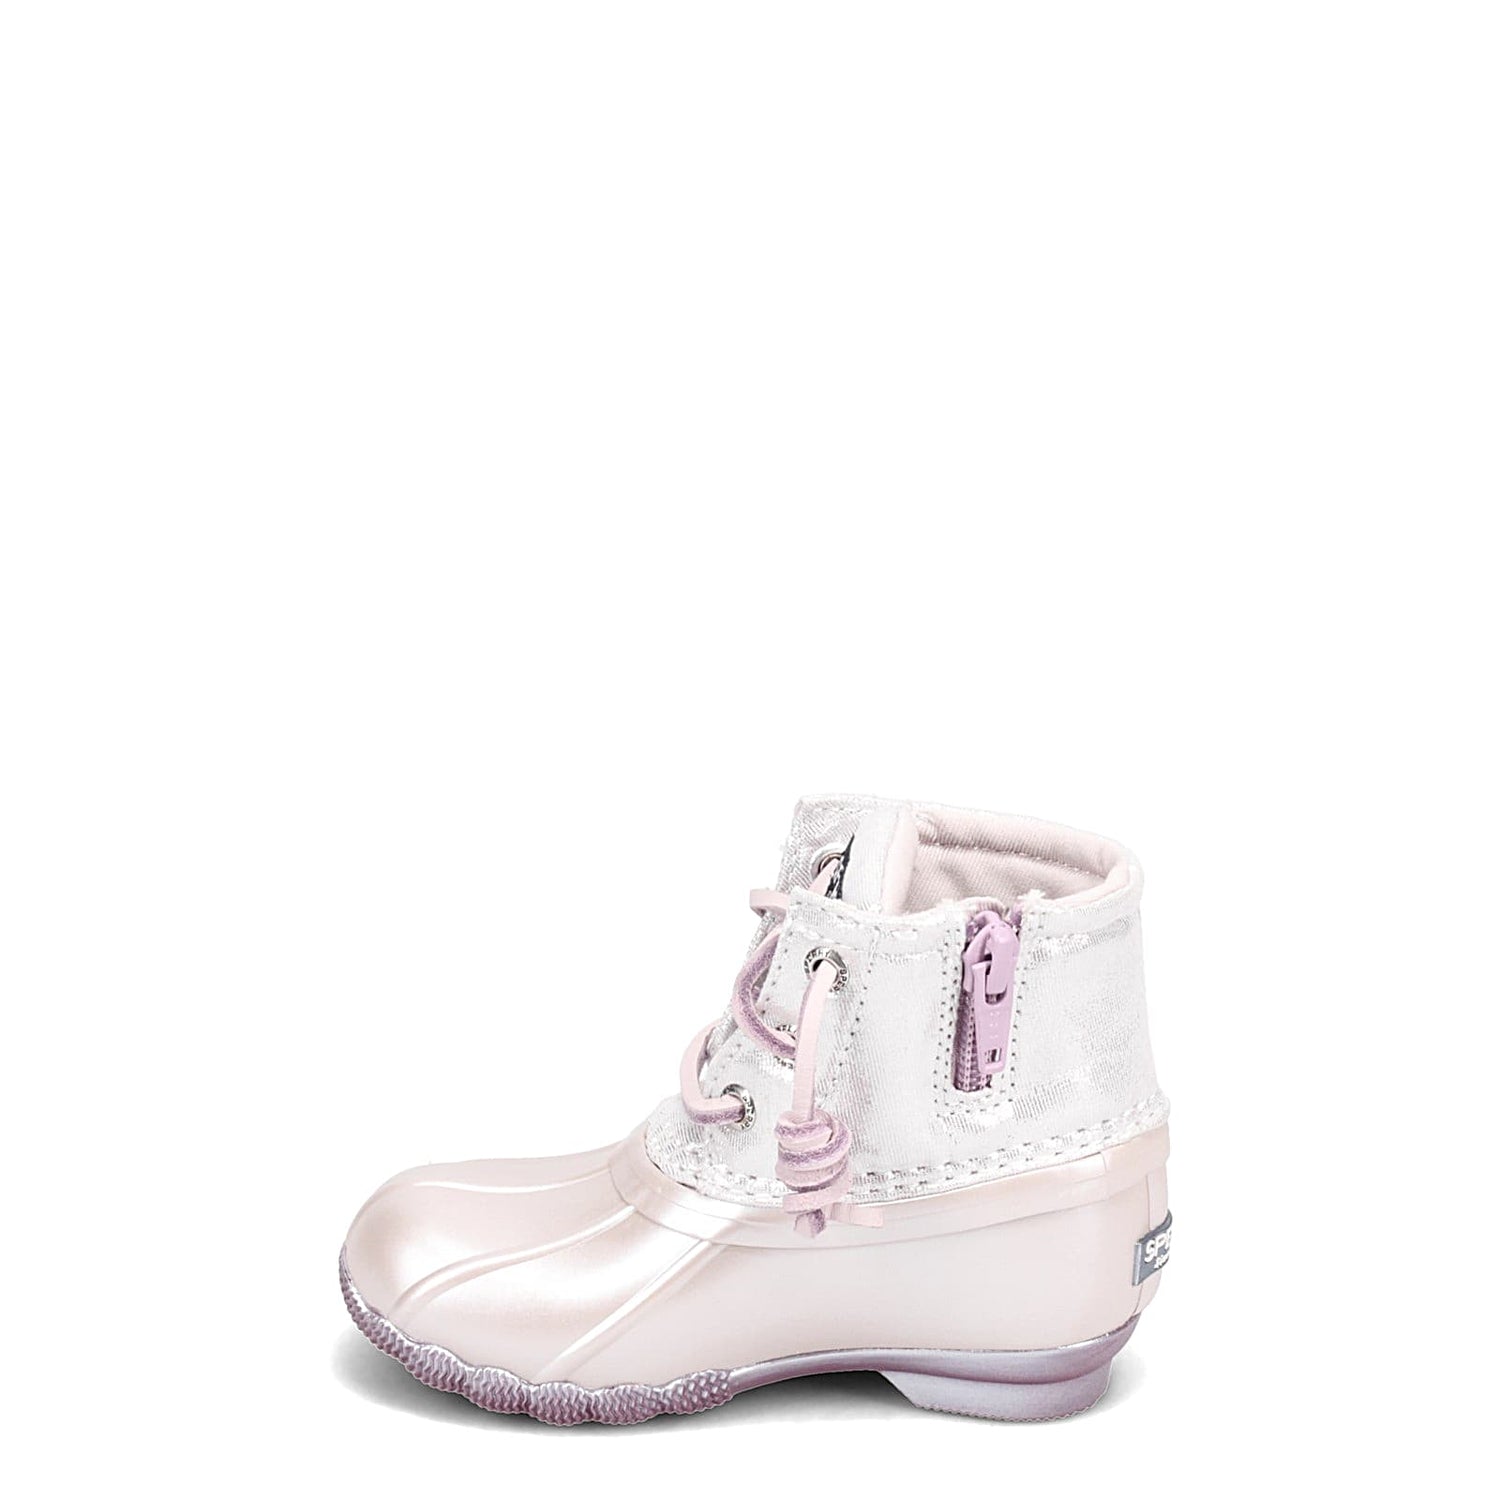 Peltz Shoes  Girl's Sperry Saltwater Rain Boot - Toddler & Little Kid